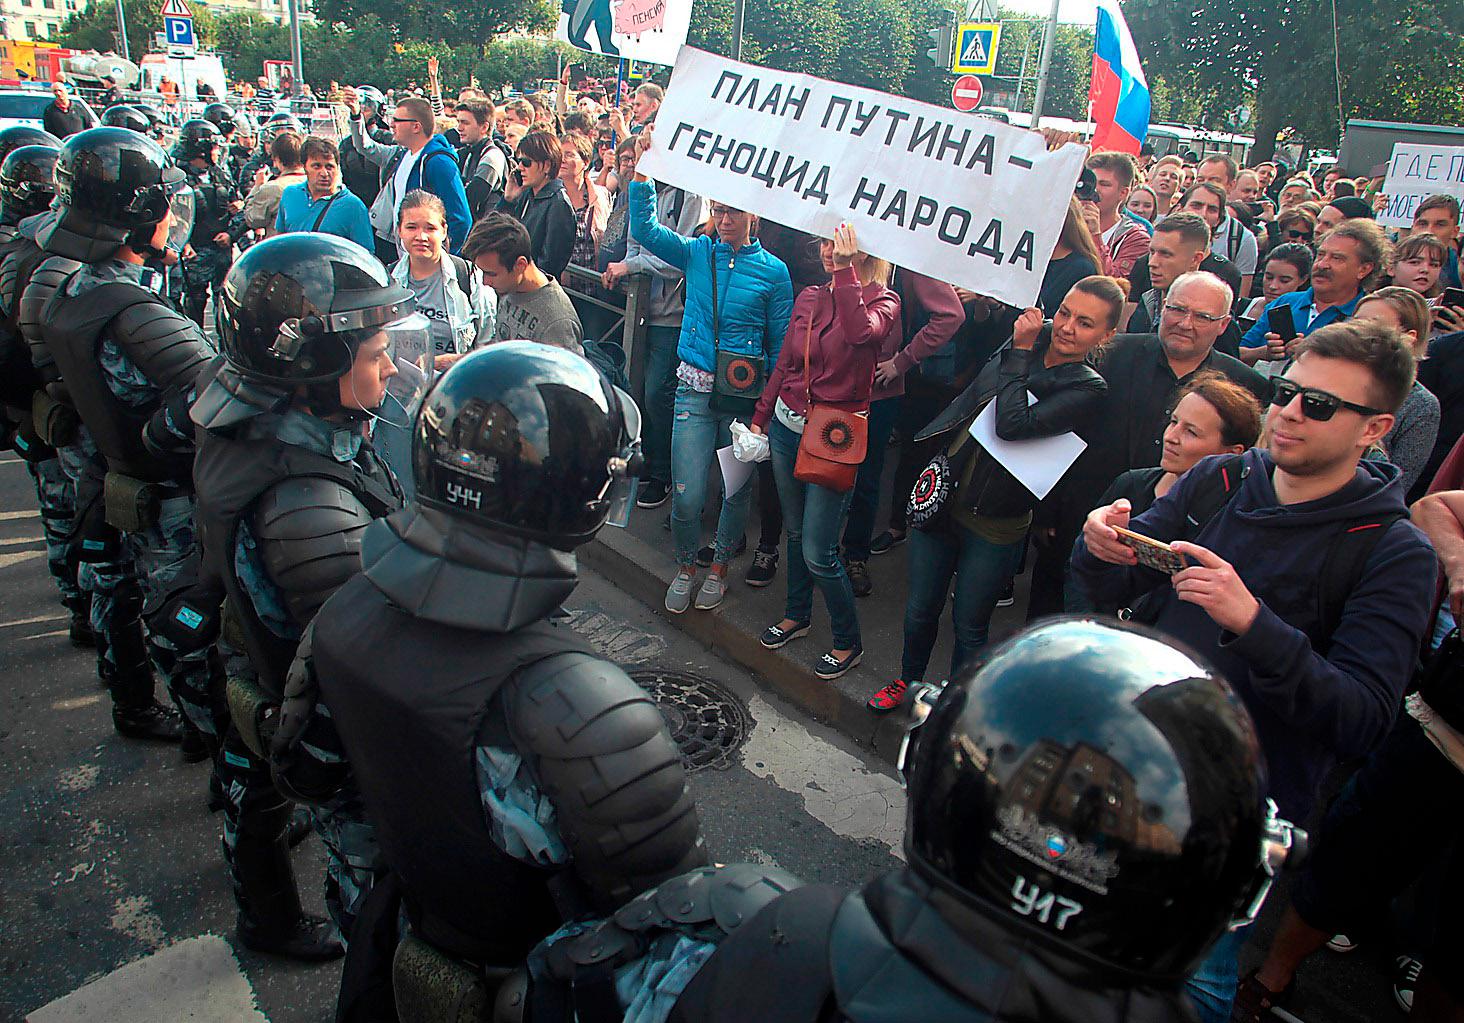 Rysk kravallpolis stoppar demonstranter med banderollen ”Putins plan är folkmord” i samband med demonstrationer mot den nya pensionsreformen  i Sankt Petersburg den 9 september.